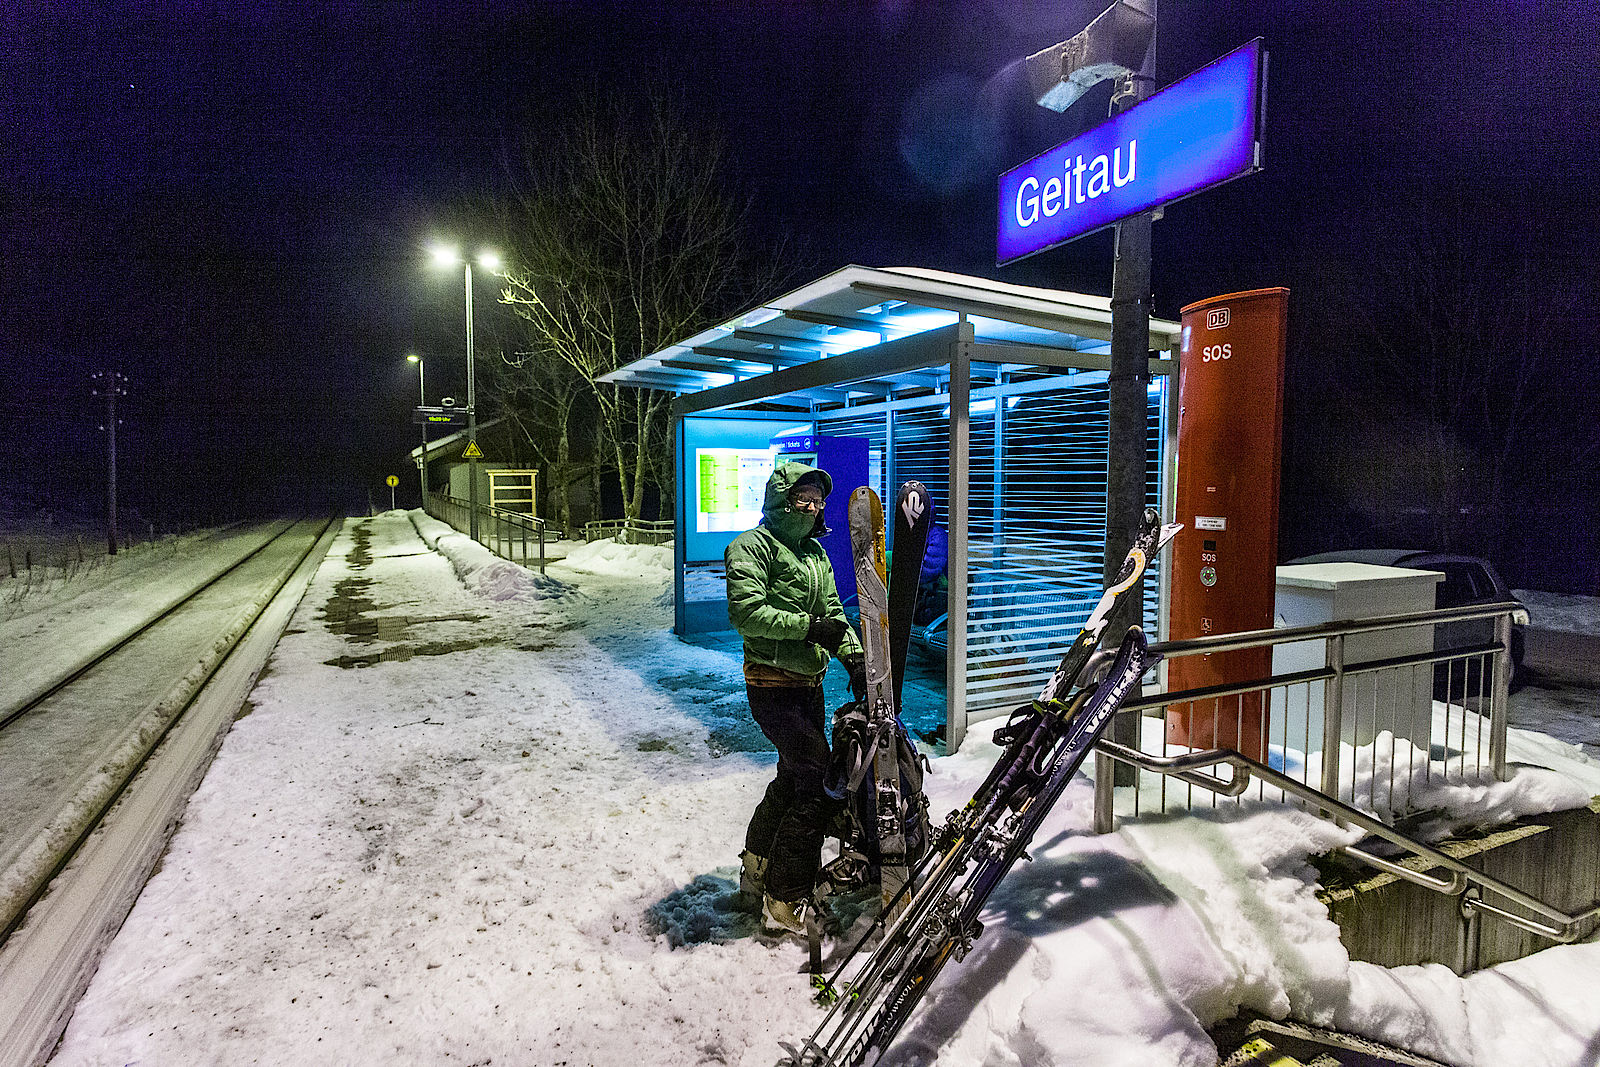 Ende einer Skidurchquerung der Bayerischen Voralpen am Bahnhof in Geitau